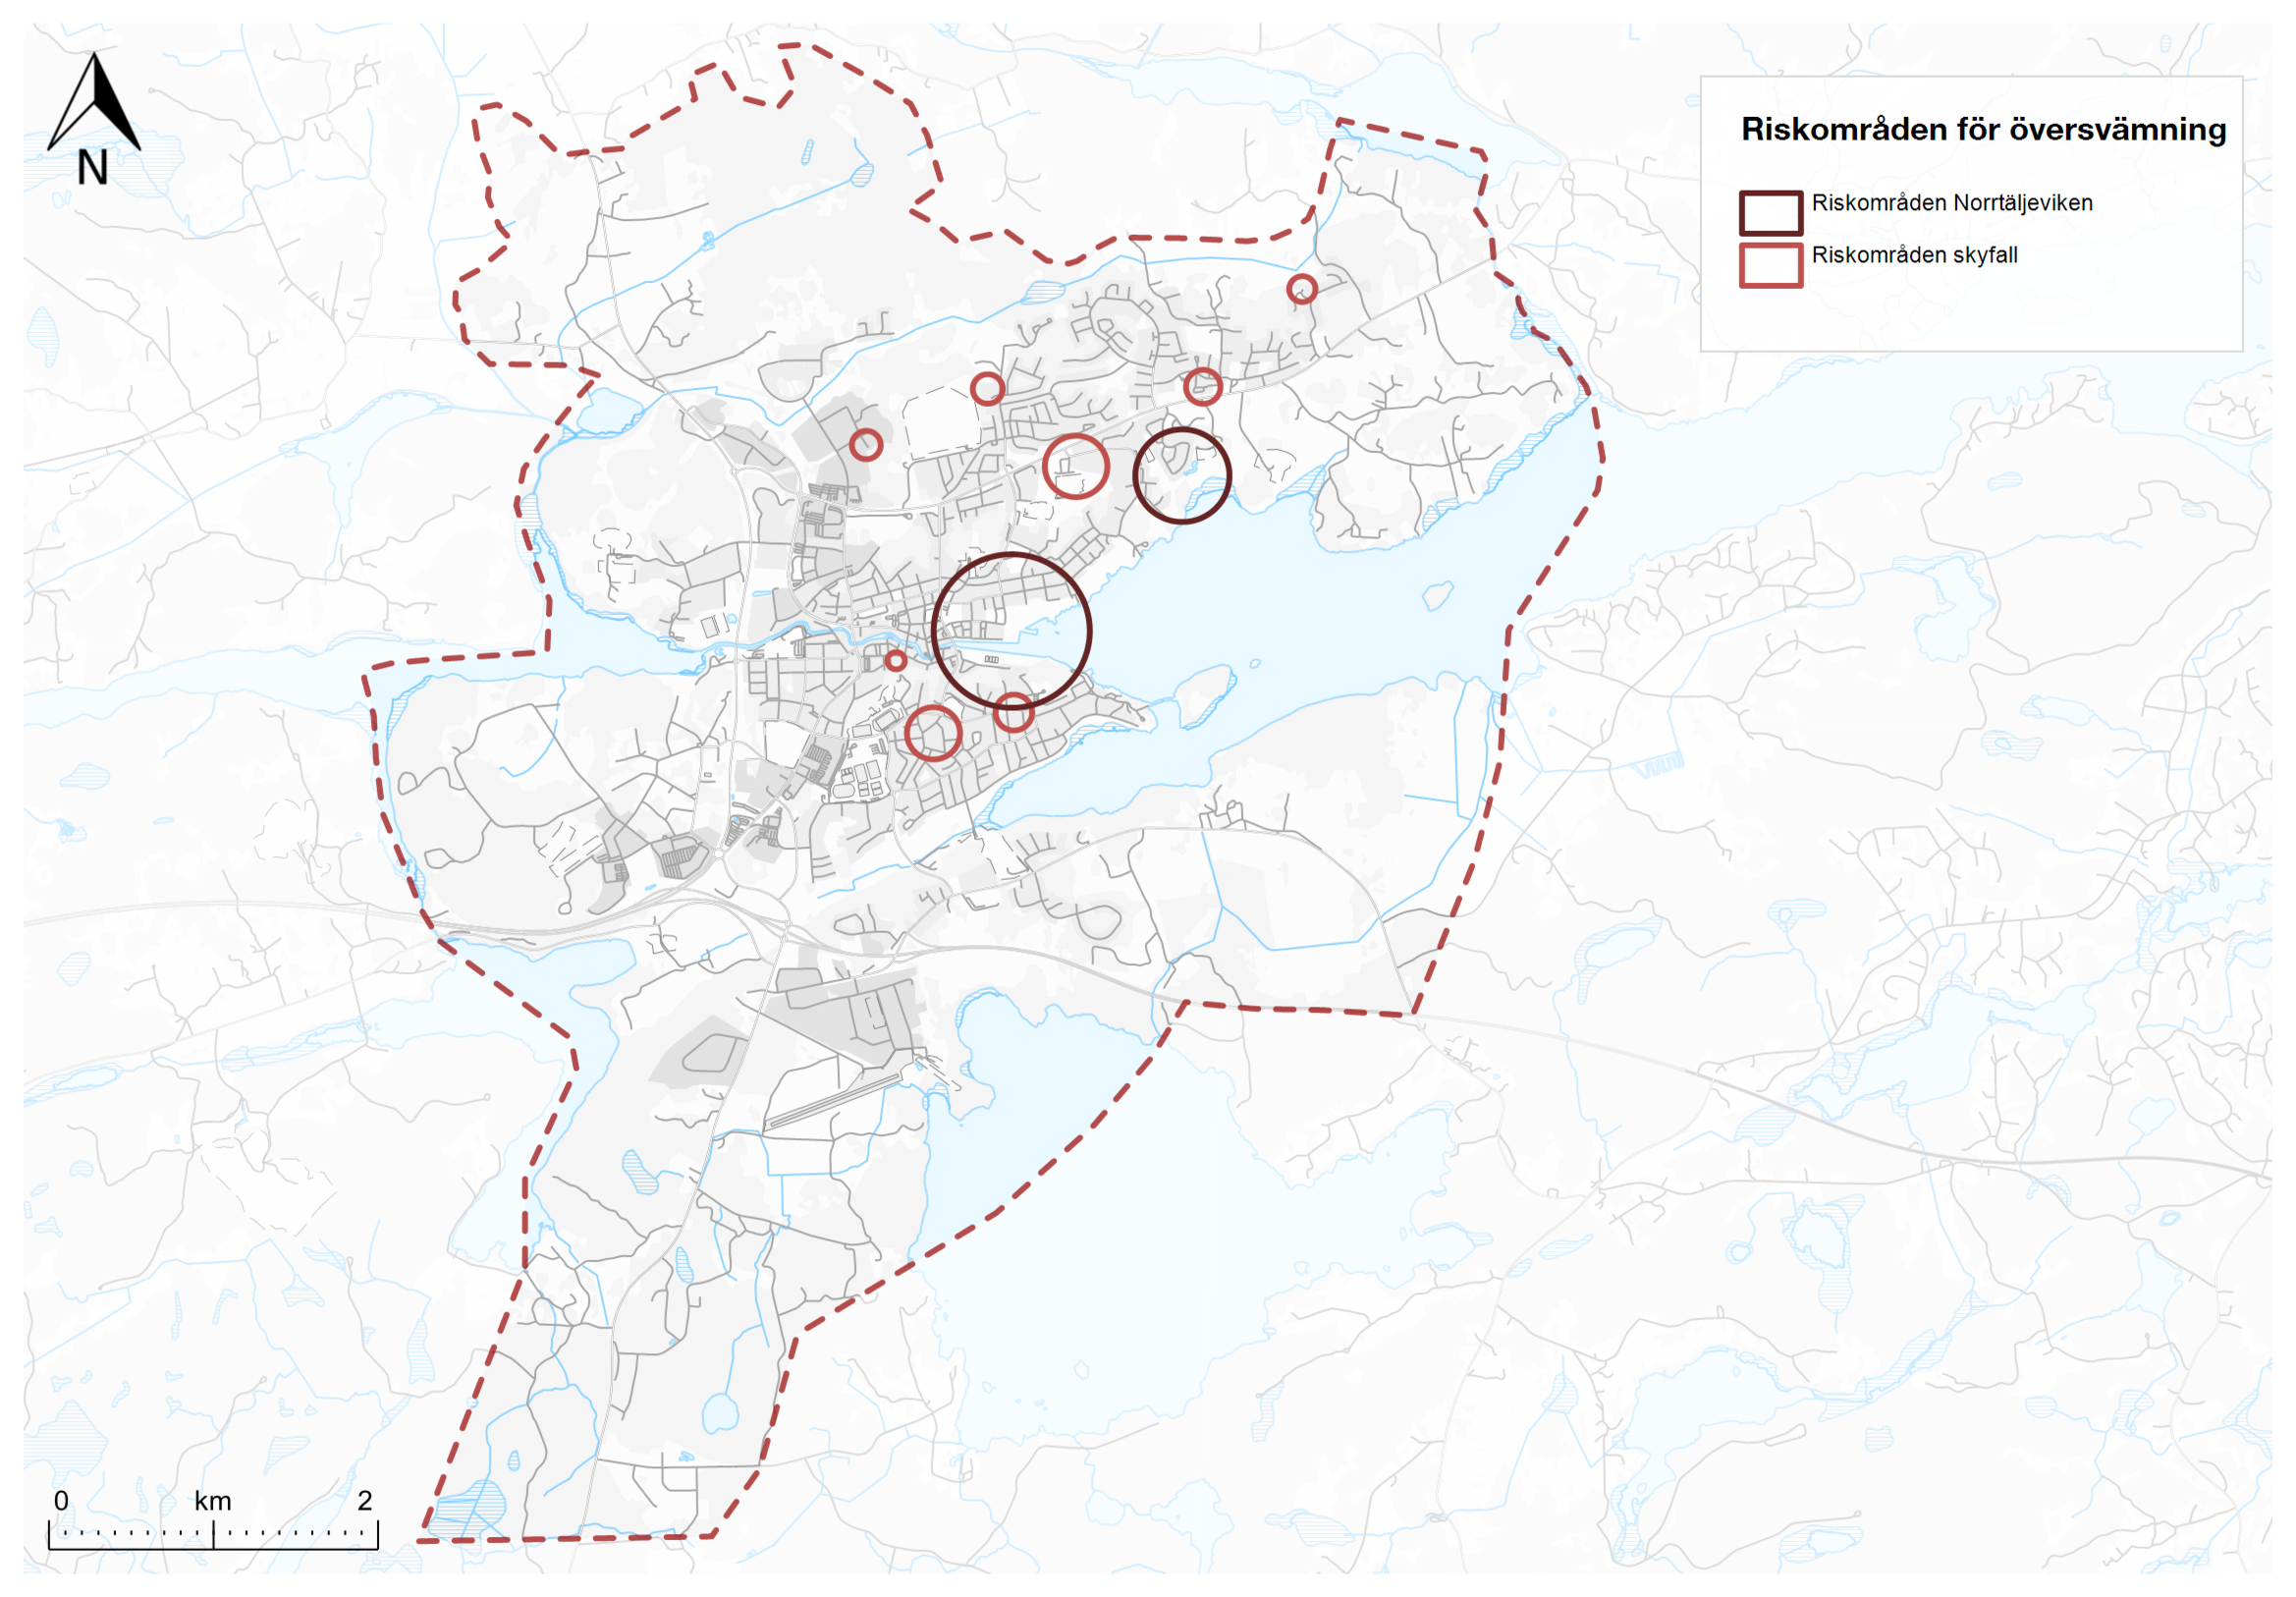 Karta med ringar som visar riskområden för översvämning från skyfall och norrtäljeviken